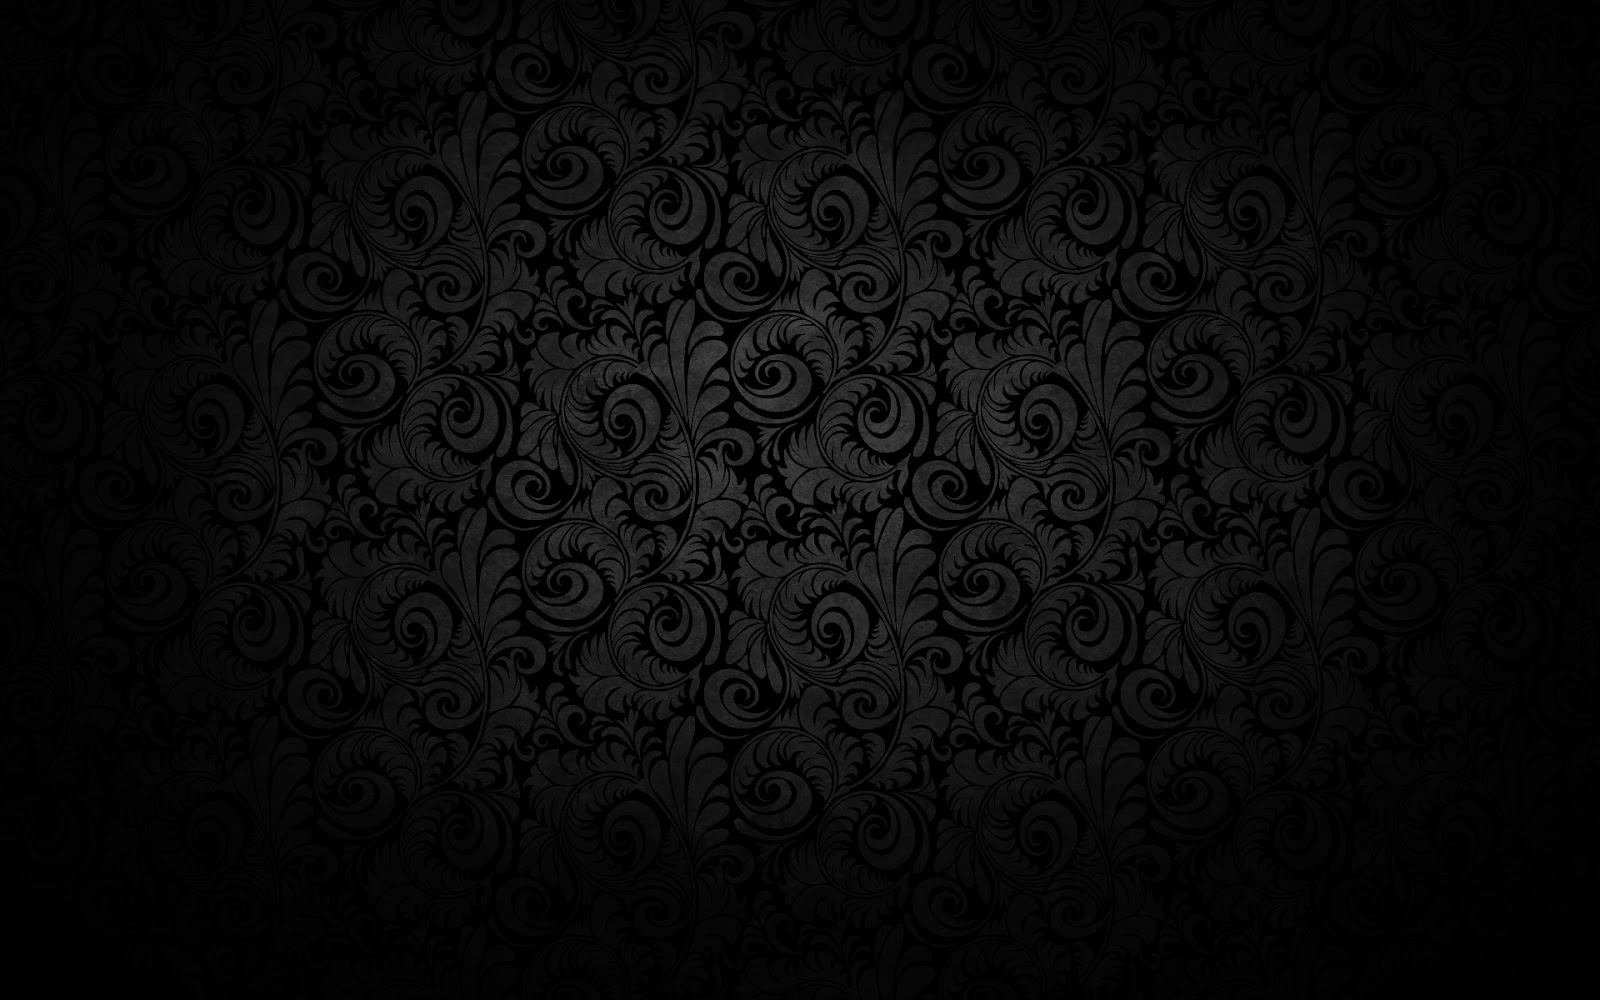 [35+] Dark Grey Floral Wallpaper | WallpaperSafari.com